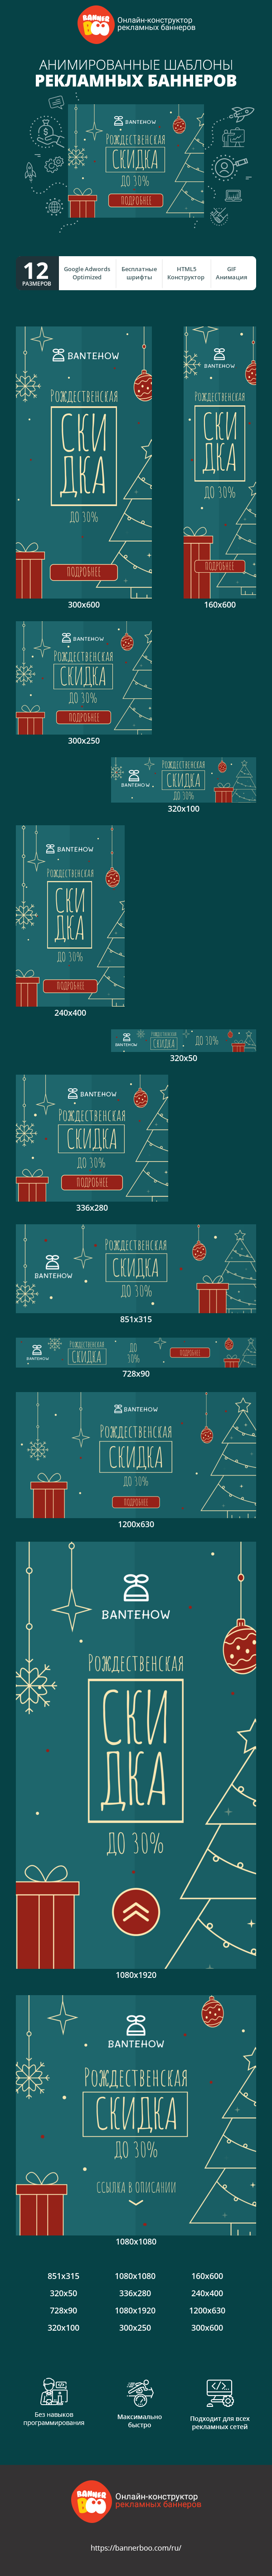 Шаблон рекламного баннера — Рождественская скидка — до 30%